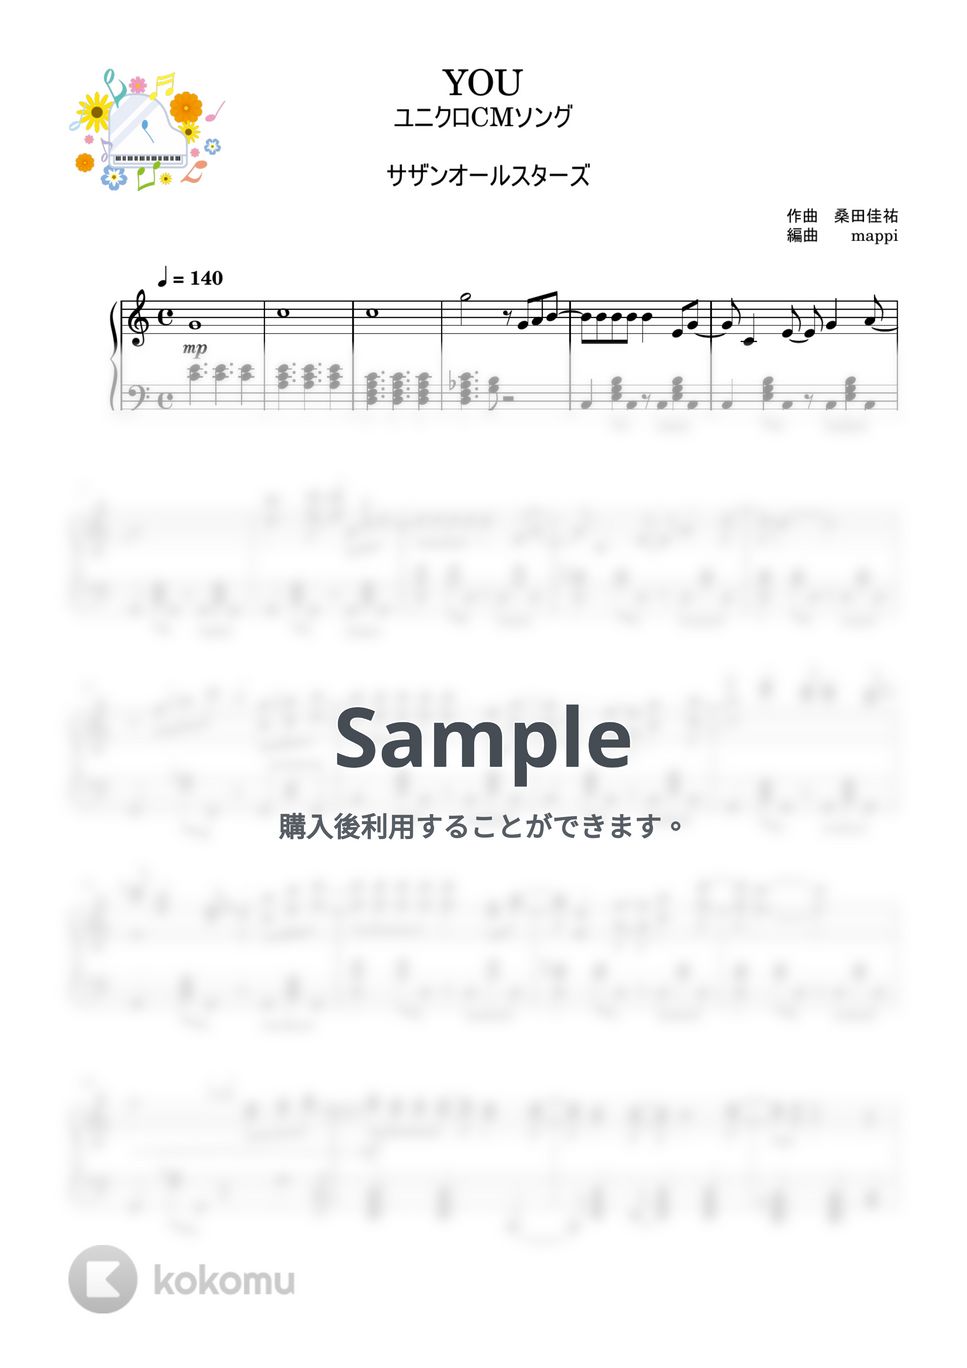 サザンオールスターズ - YOU (私にも弾ける/ユニクロCMソング/シンプルアレンジ) by pup-mappi